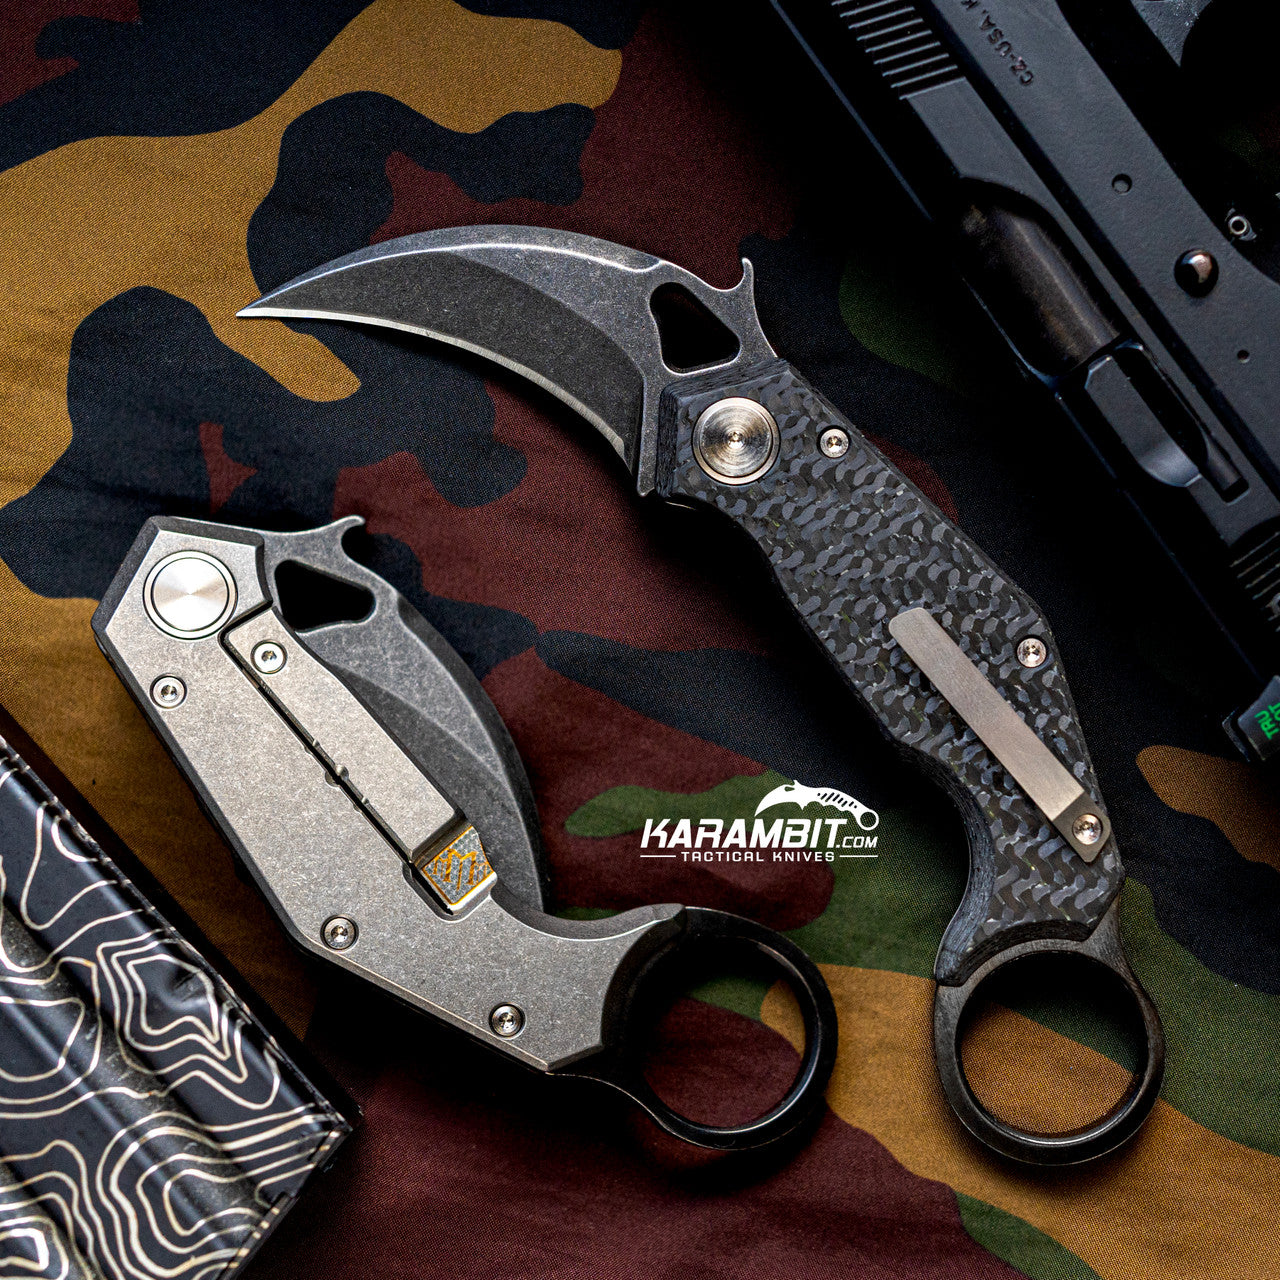  Tactical Knife for Men - Black Pocket Knife - Best